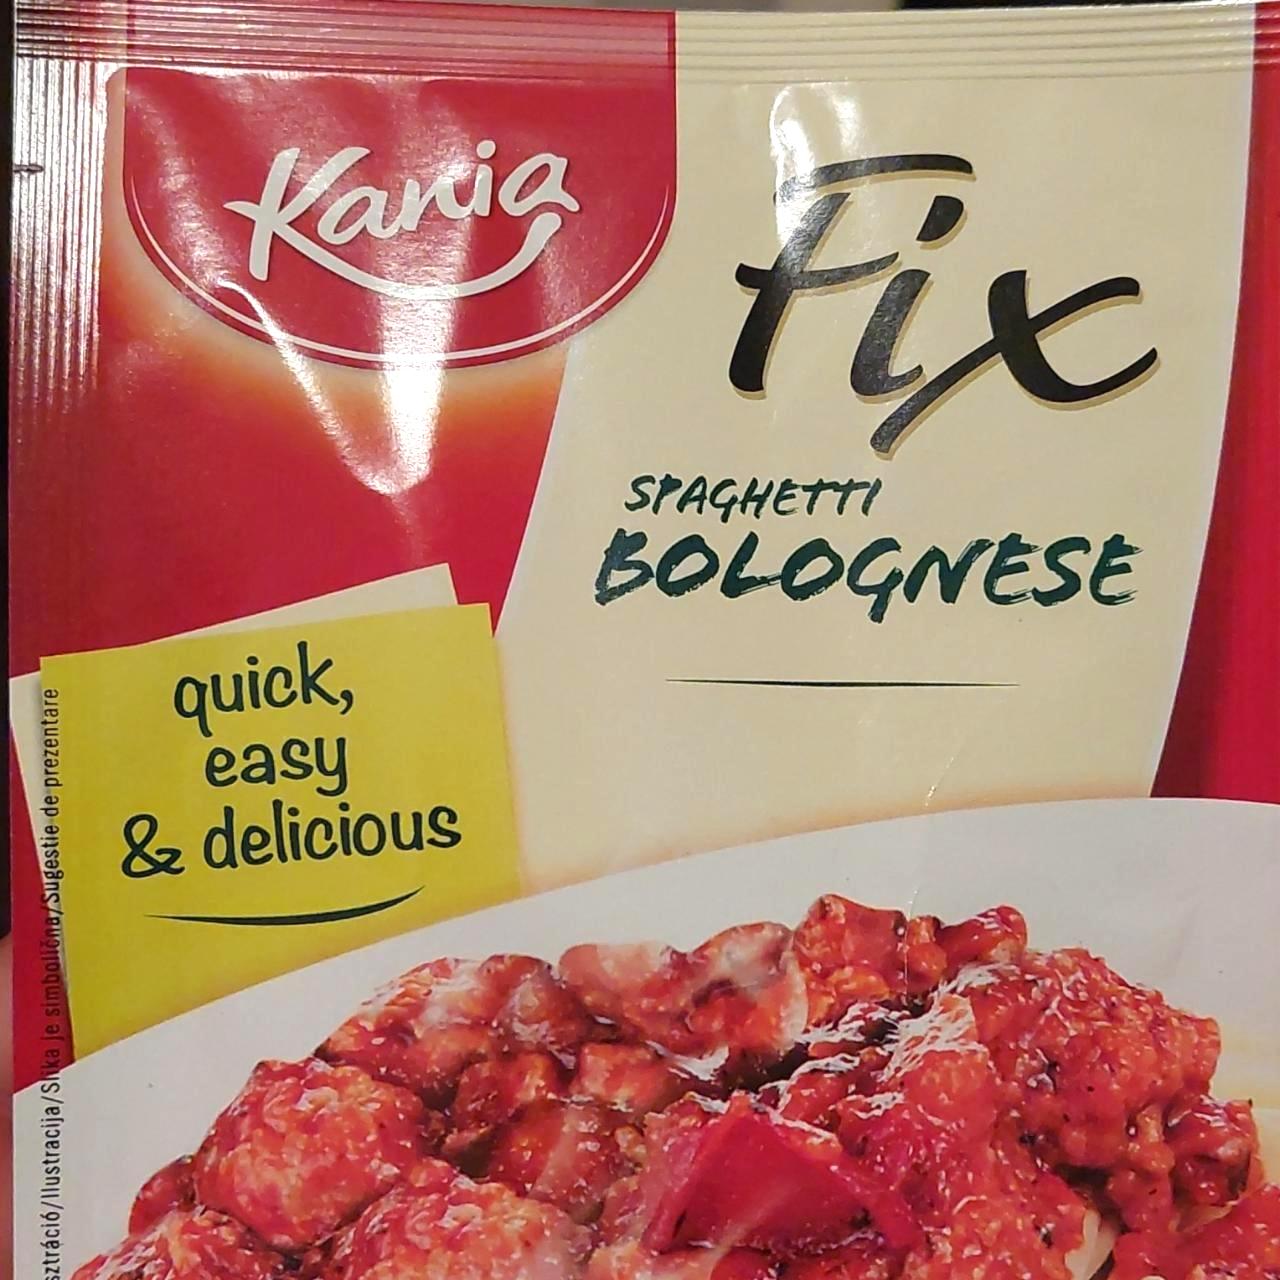 Képek - Fix spaghetti bolognese Kania